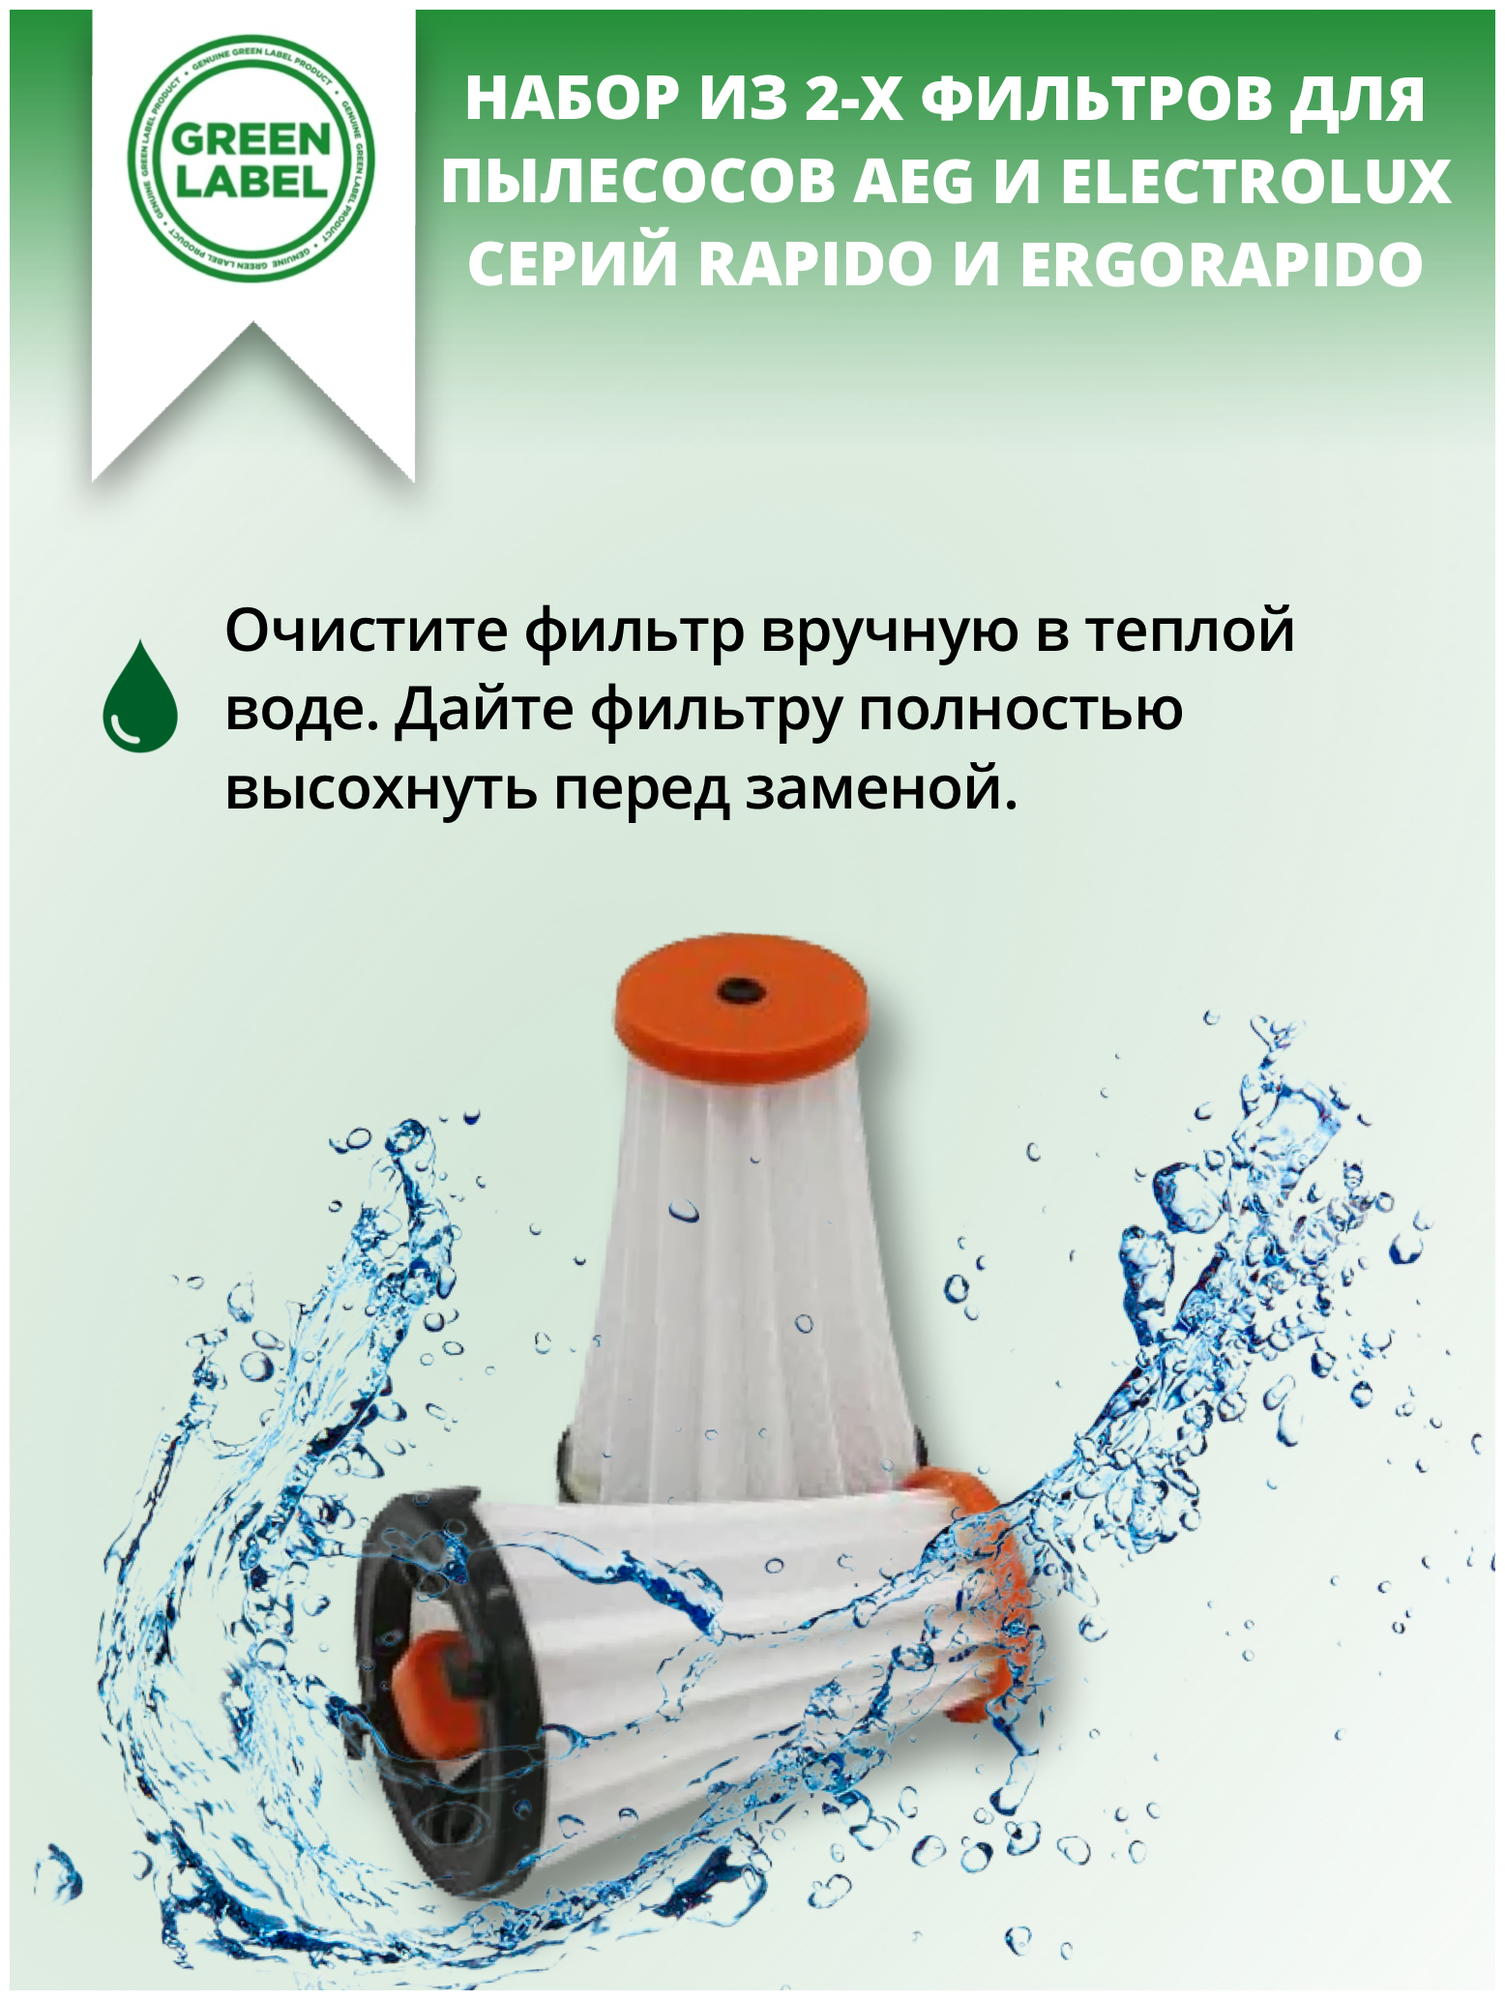 Green Label Набор из 2-х фильтров AEF 144 EF144 для пылесосов AEG и Electrolux серий Rapido и Ergorapido